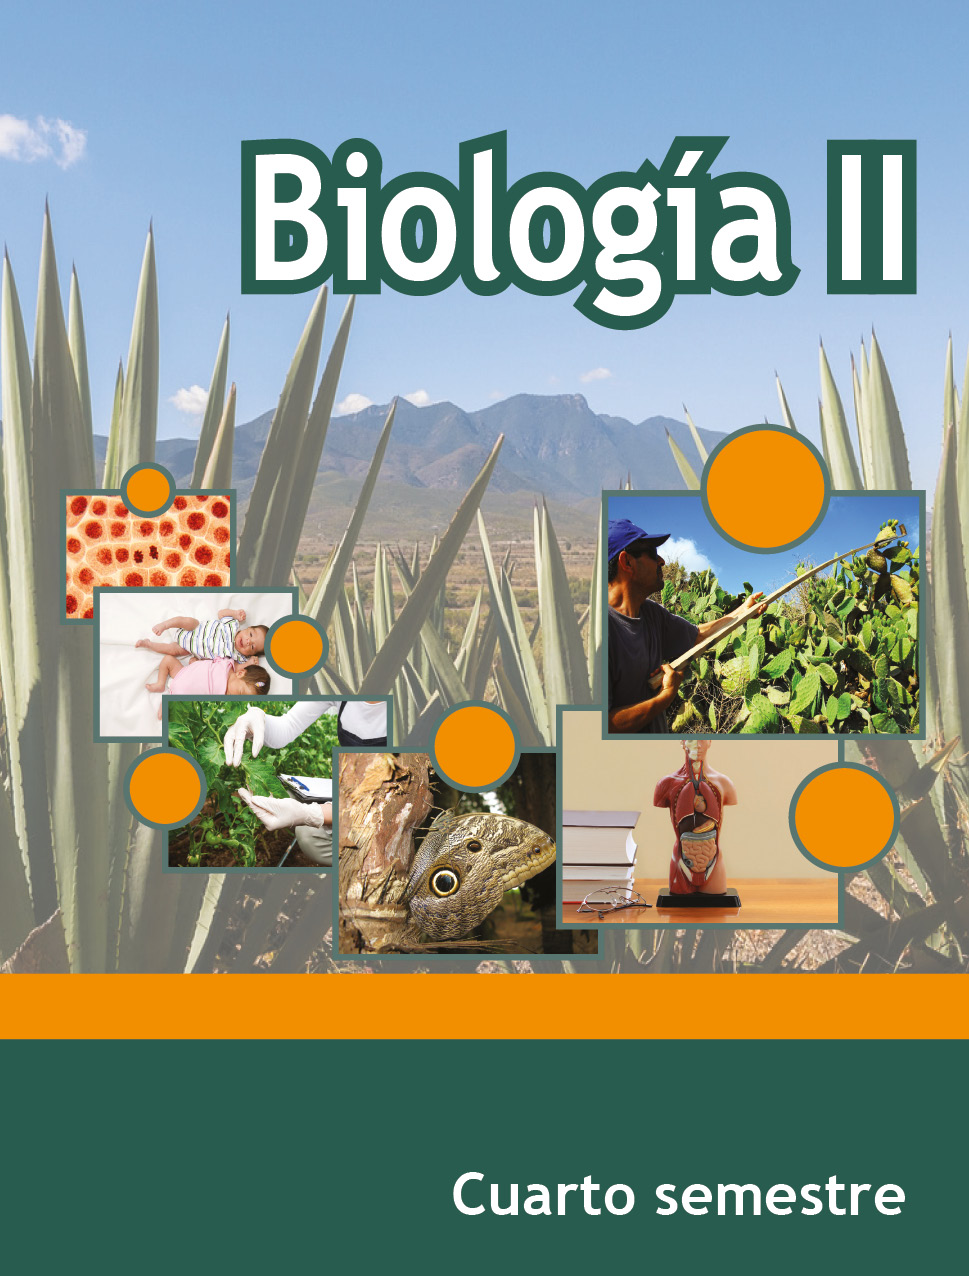 Biología II, Editorial: Secretaría de Educación Pública, Nivel: Telebachillerato, Grado: 4